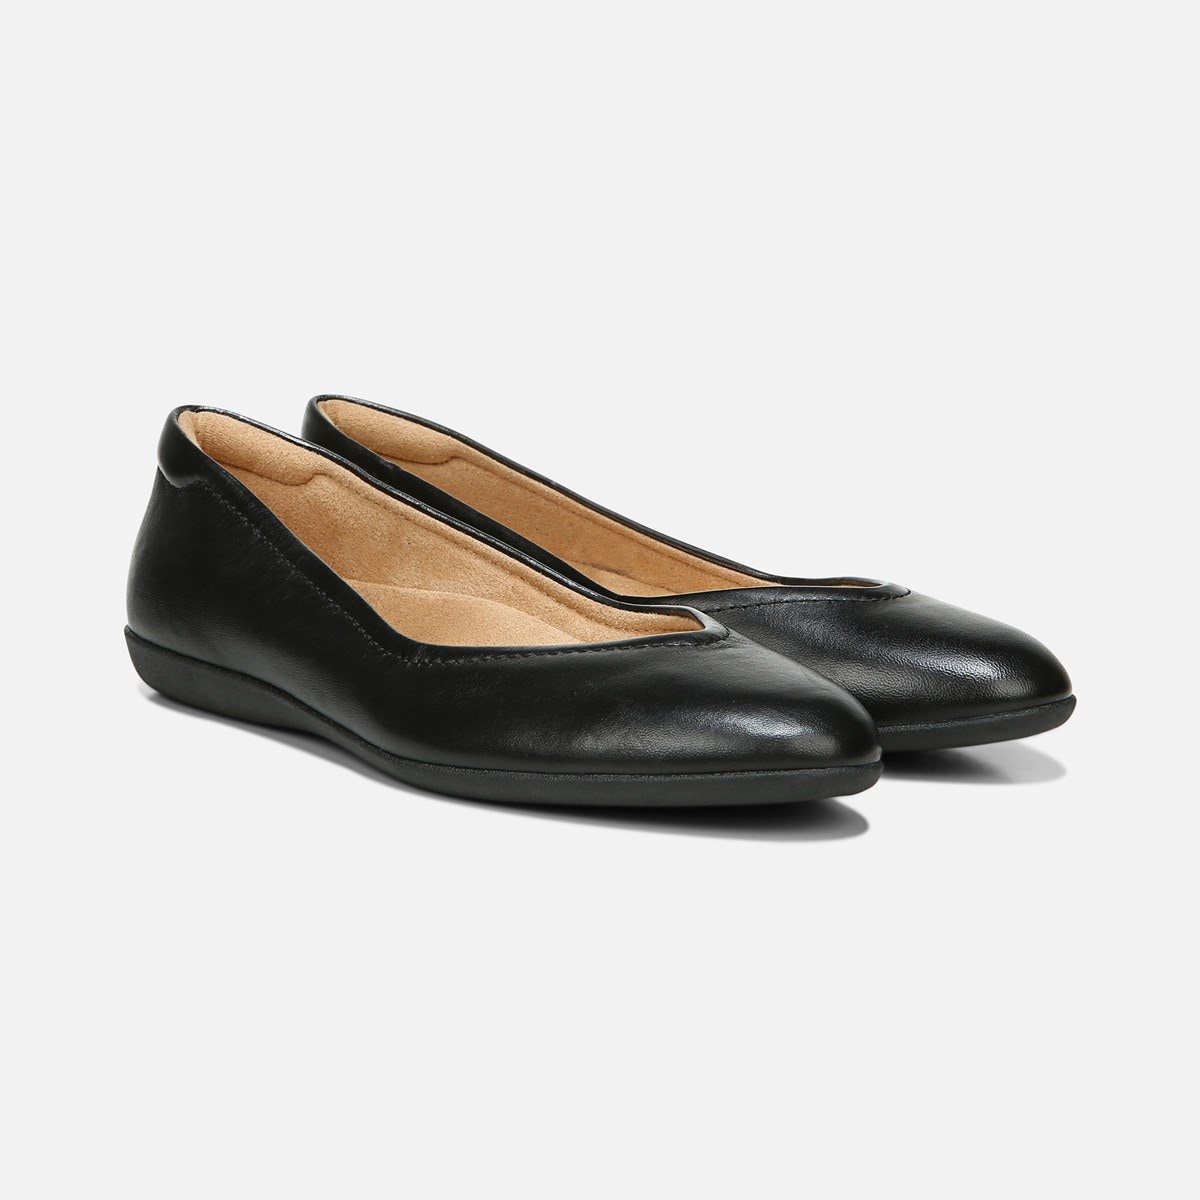 VIVIENNE FLAT | Women's Flats | Naturalizer shoes since 1927.